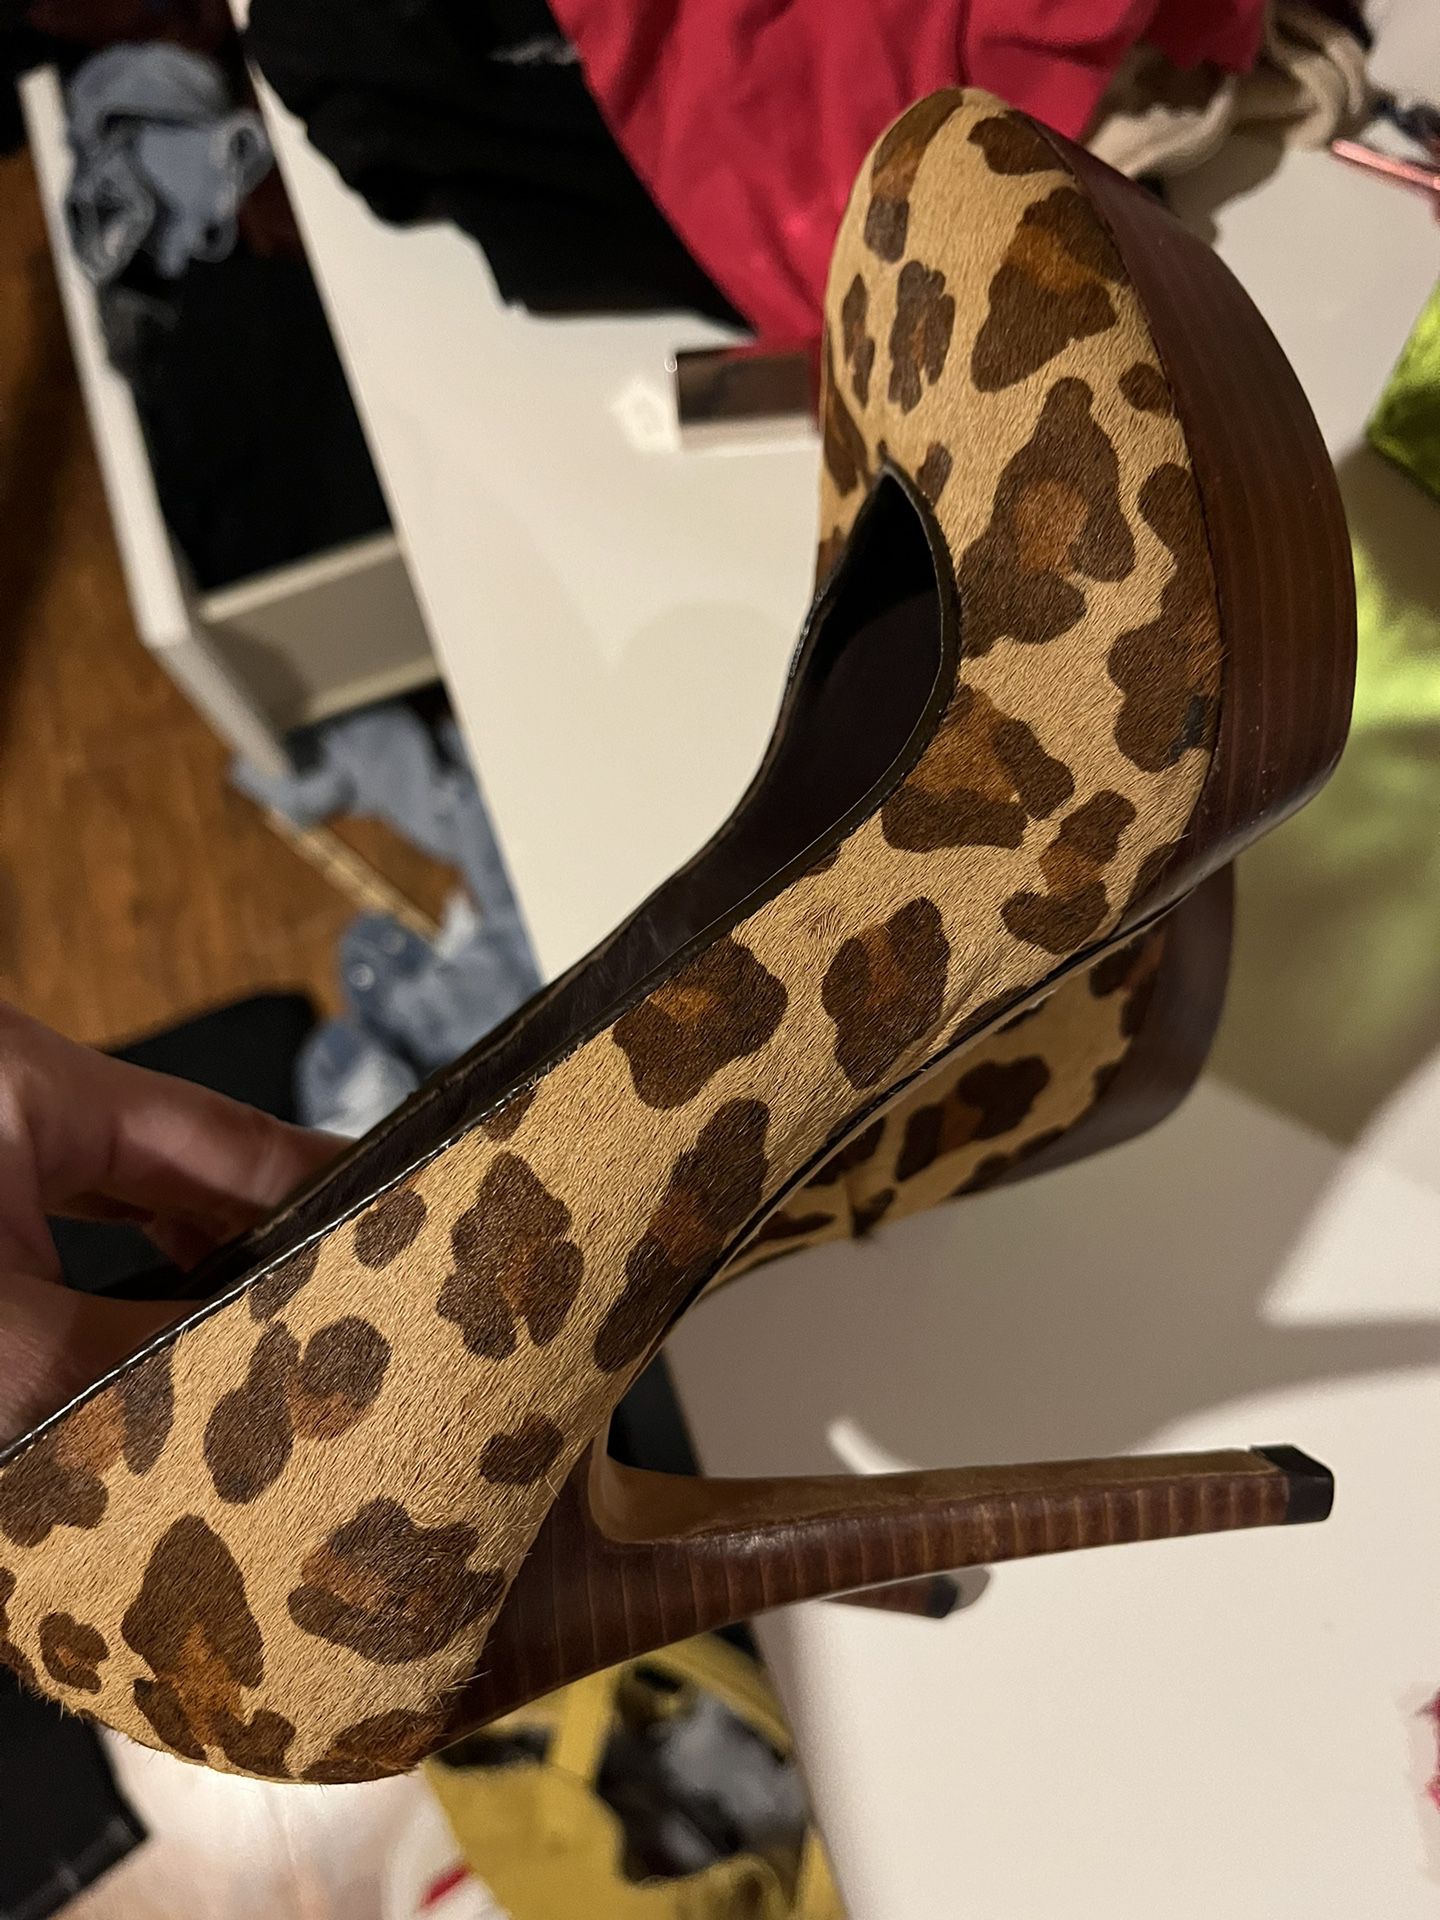 Bcbgmaxazria Cheetah Print Heels